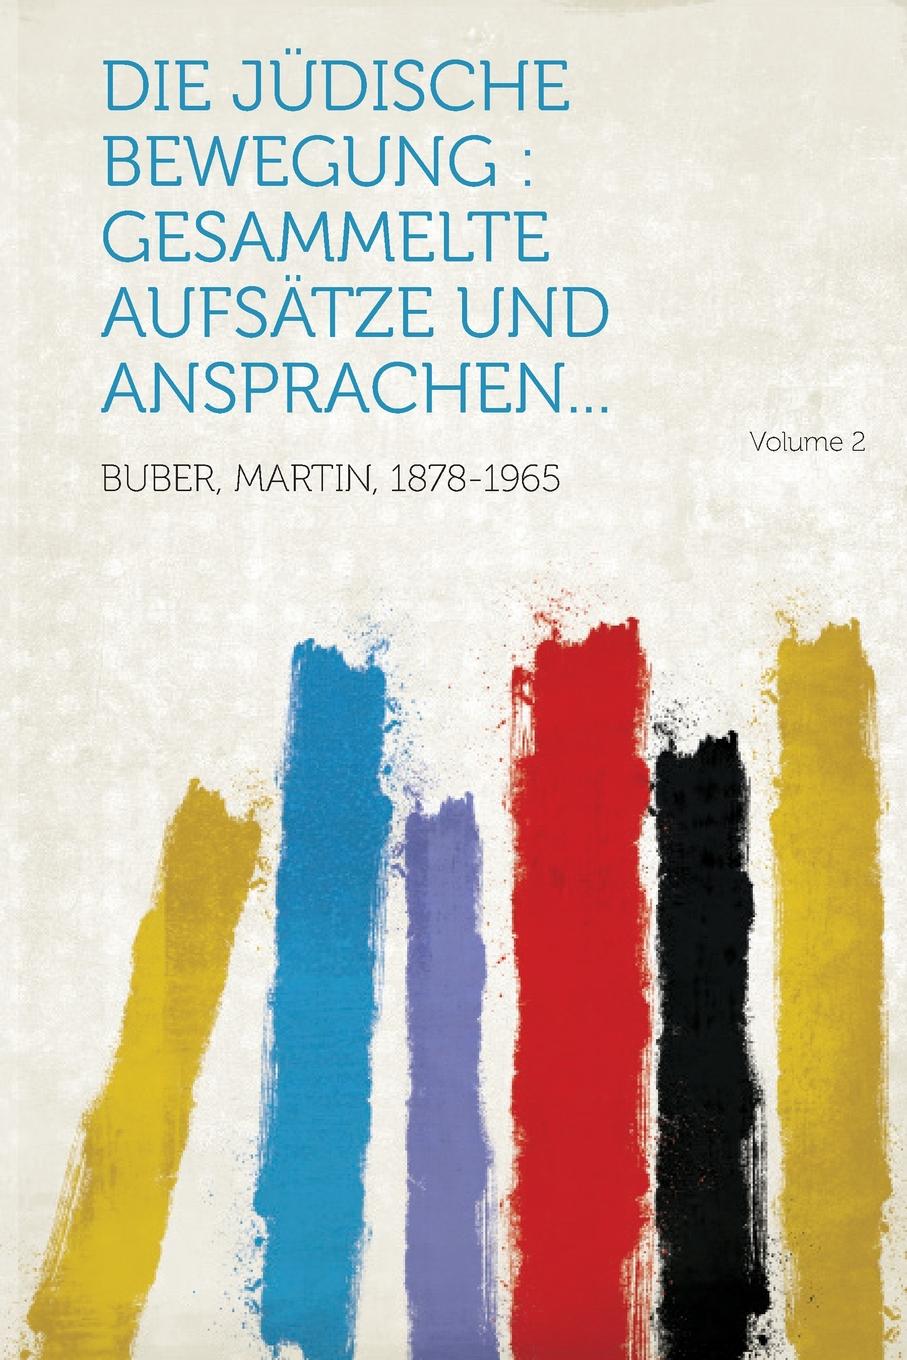 Die judische Bewegung. gesammelte Aufsatze und Ansprachen... Volume 2